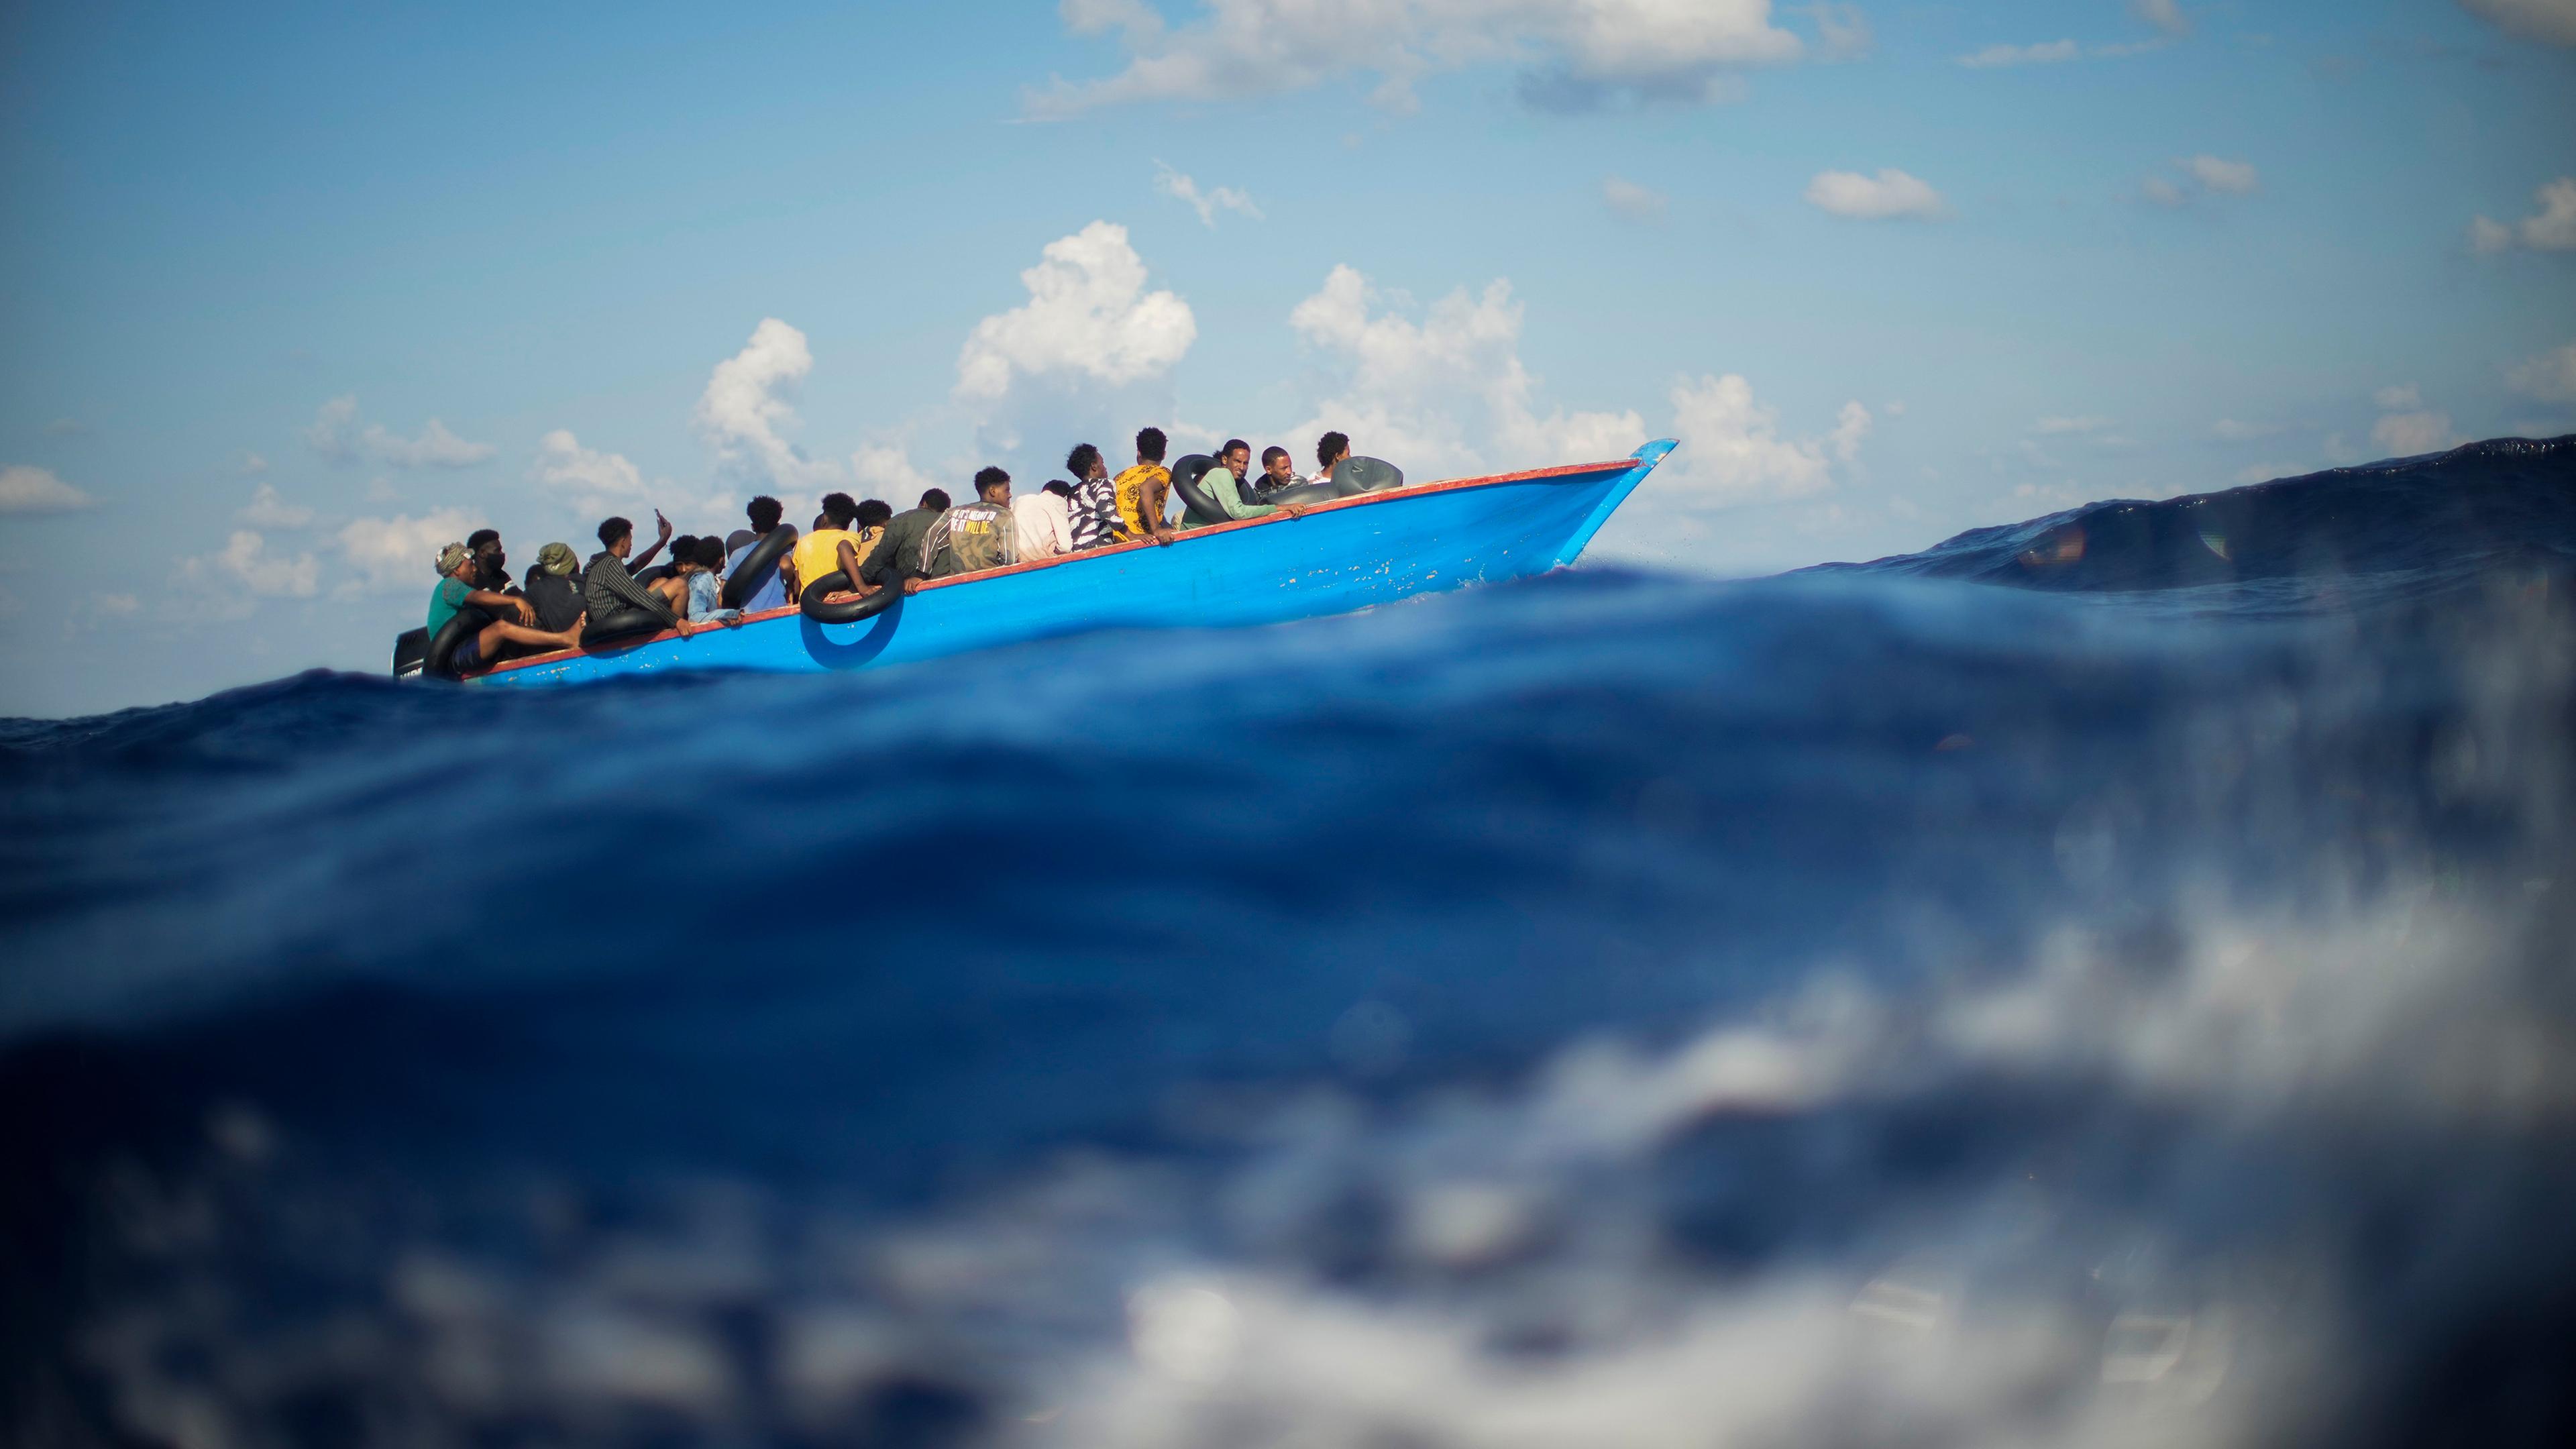 Italien: Migranten sitzen in einem Holzboot südlich der italienischen Insel Lampedusa auf dem Mittelmeer.